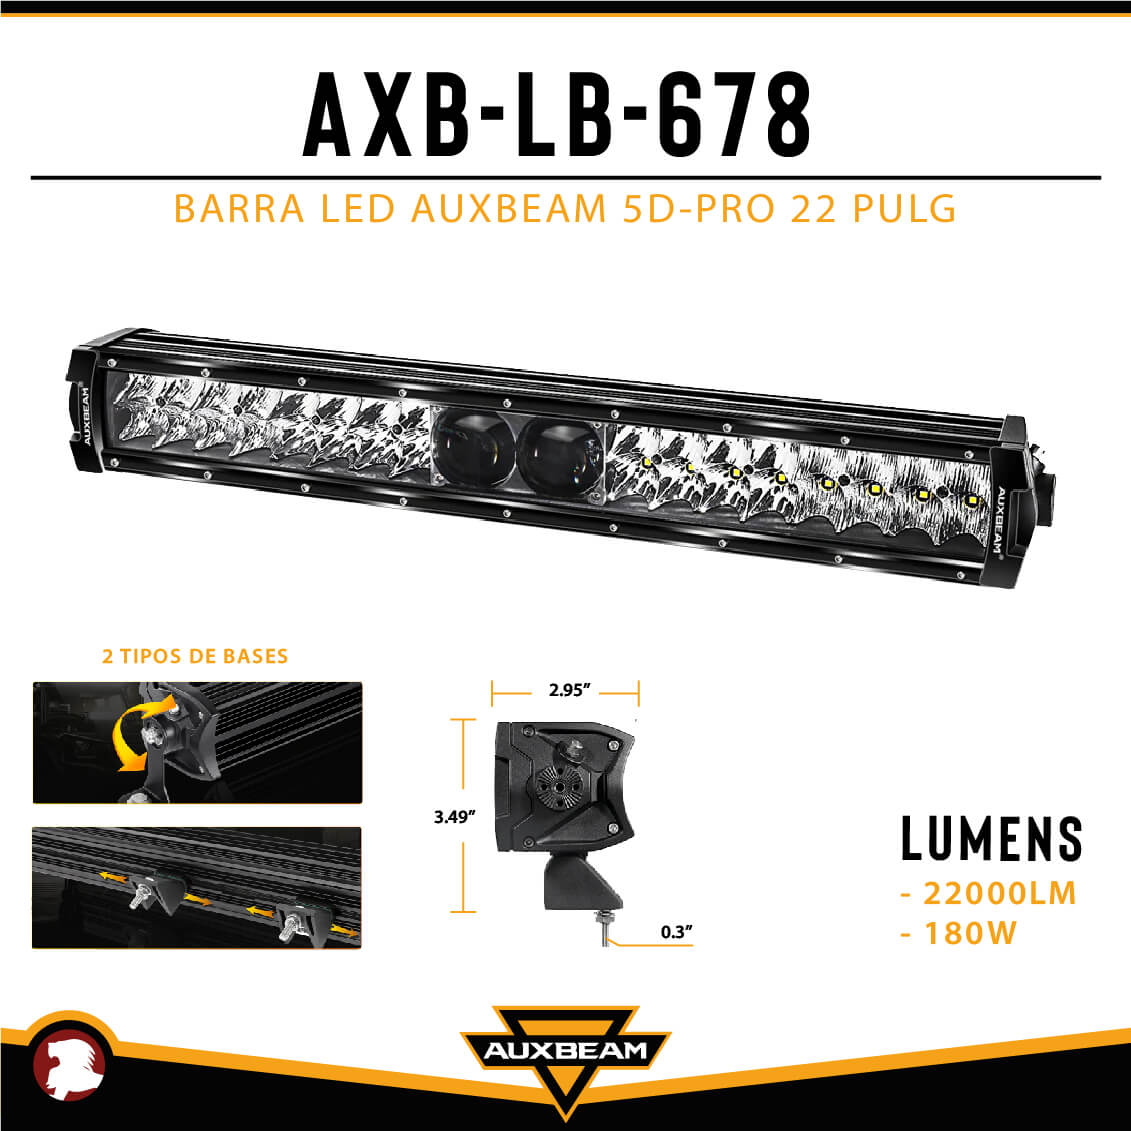 BARRA LED AUXBEAM 5D-PRO 22 PULG - REACSA